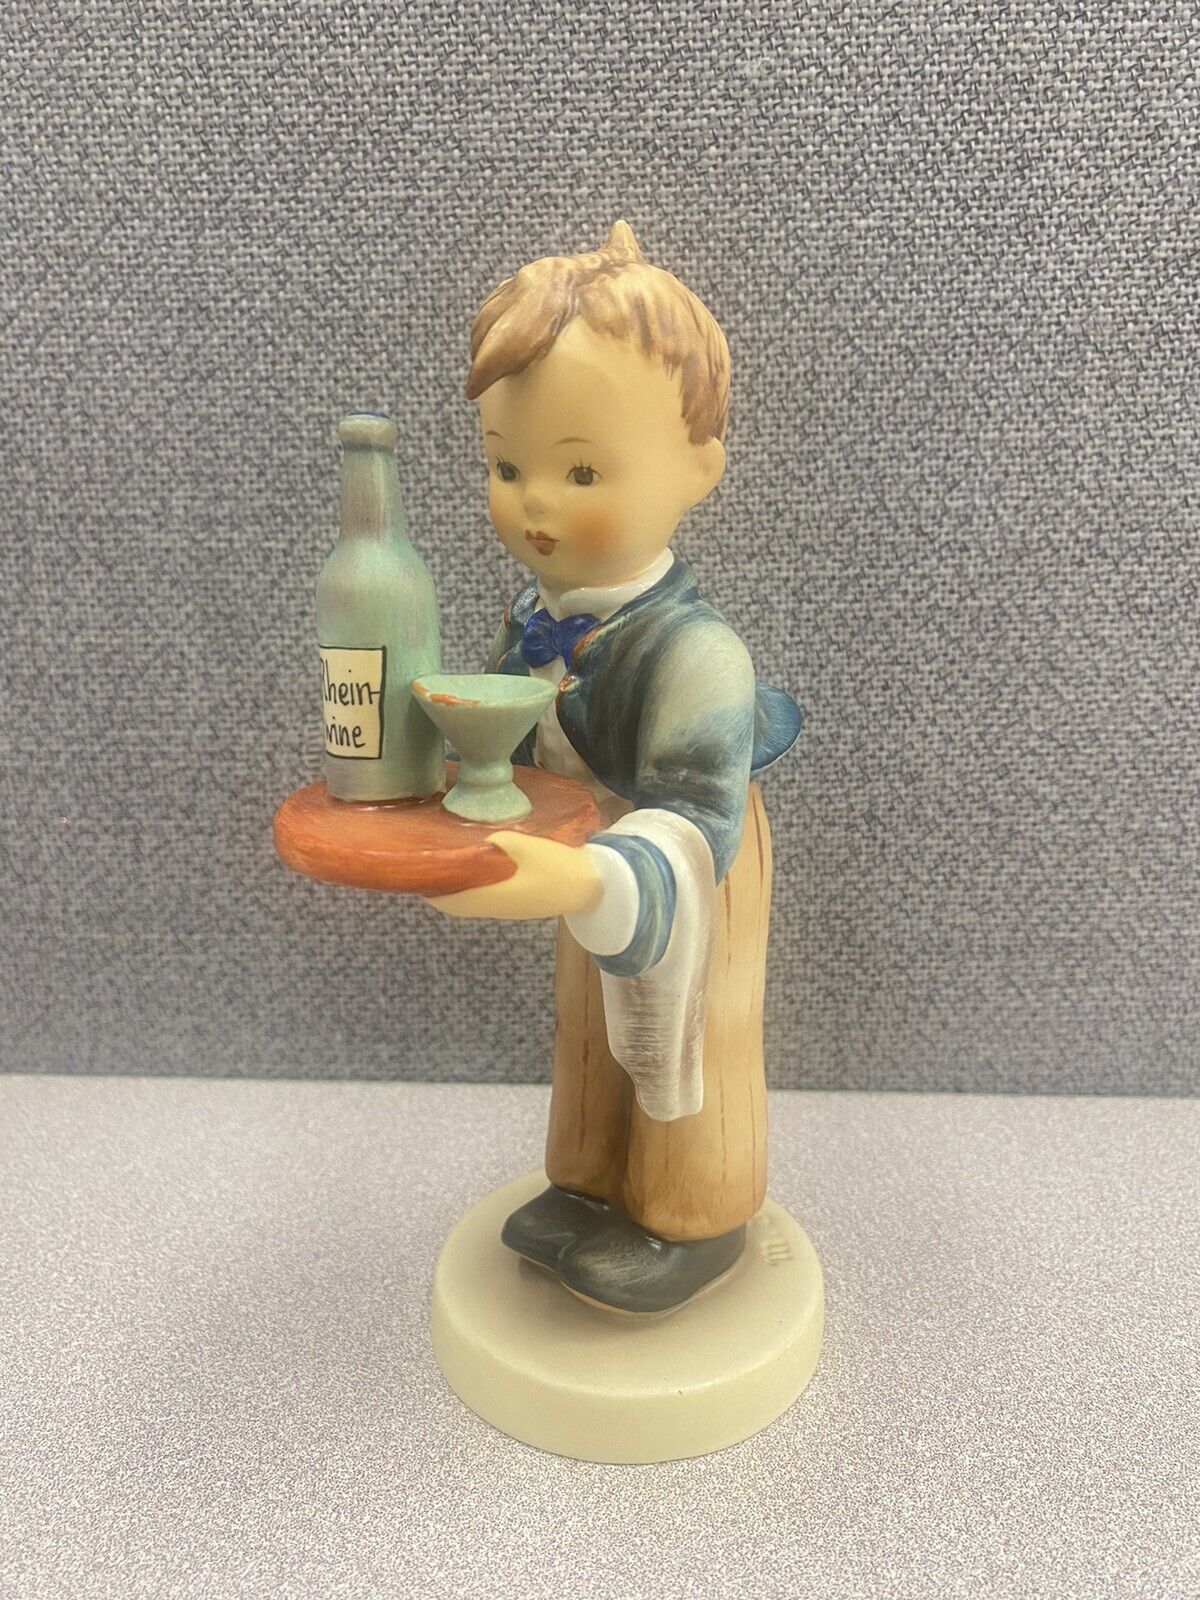 Hummel Goebel Waiter Figurine TMK-5 Vintage #154